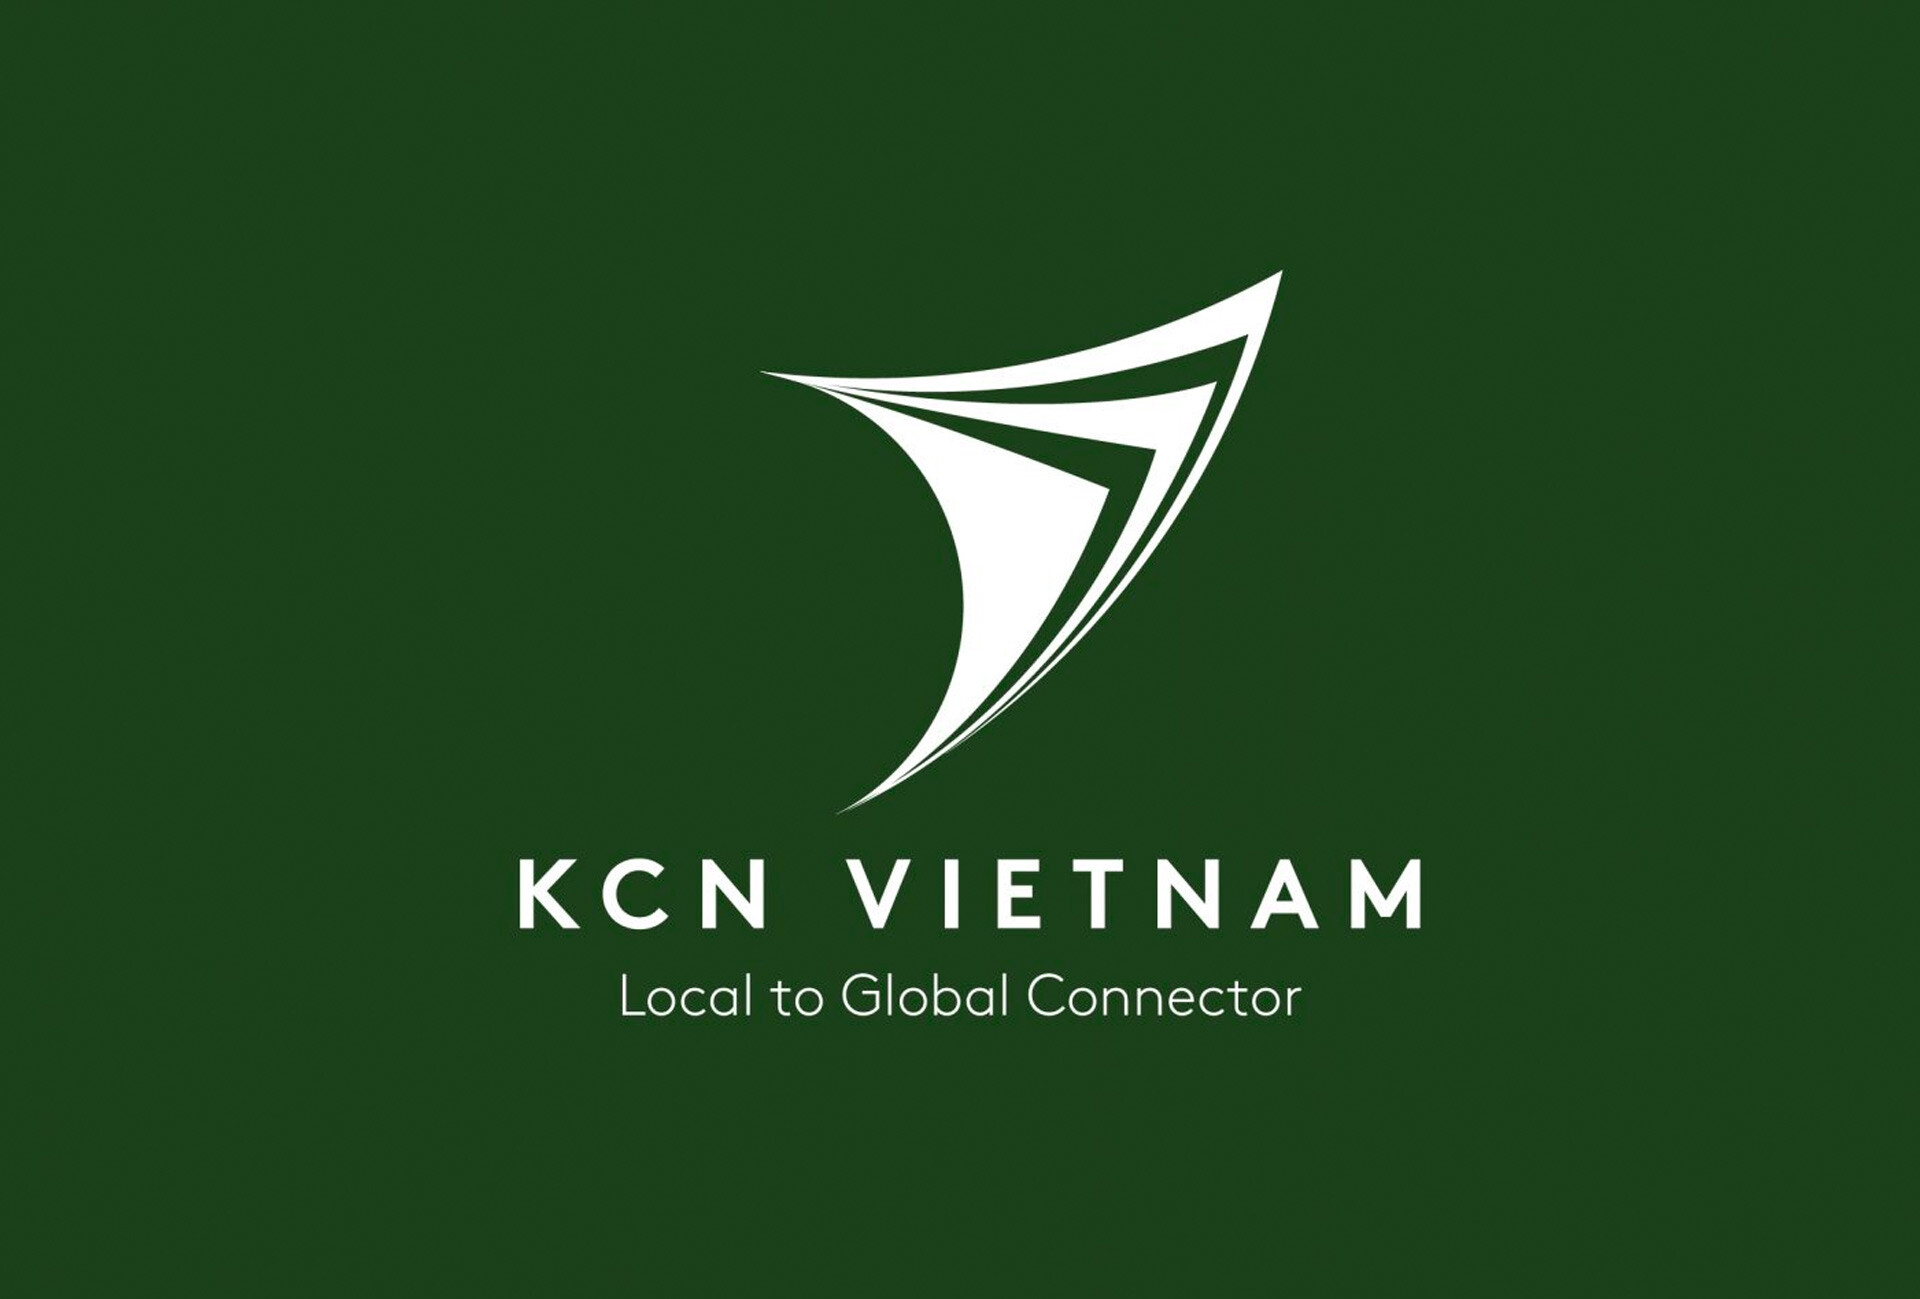 KCN Vietnam